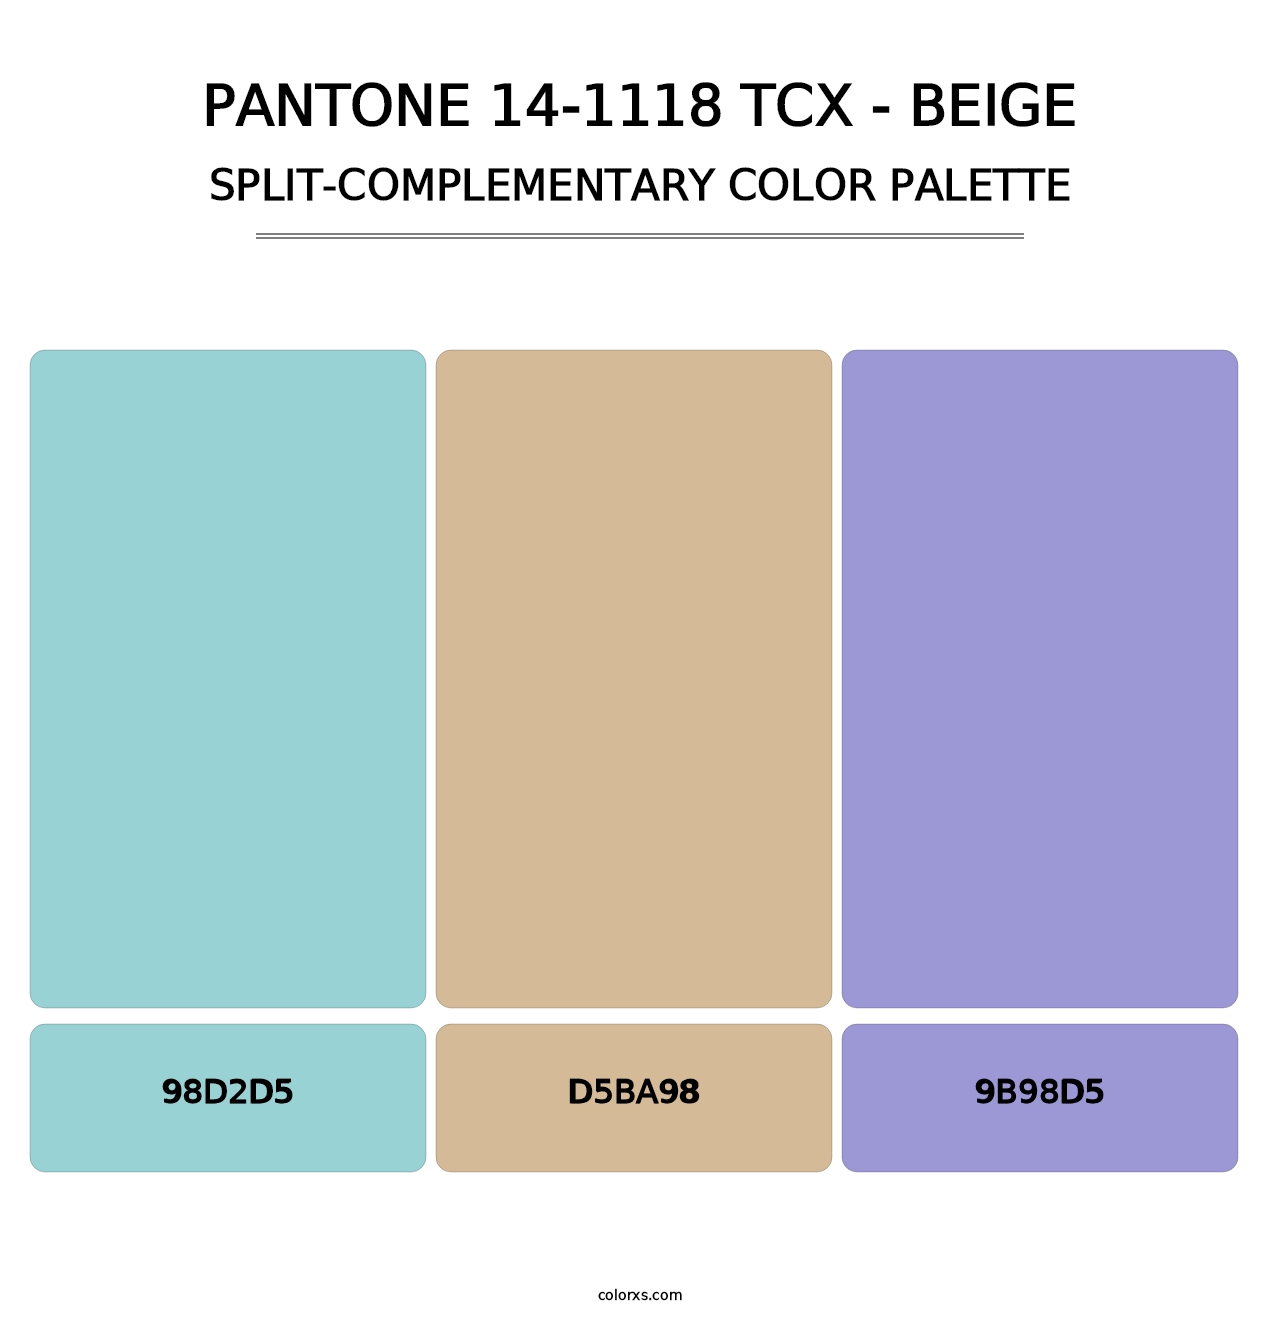 PANTONE 14-1118 TCX - Beige - Split-Complementary Color Palette